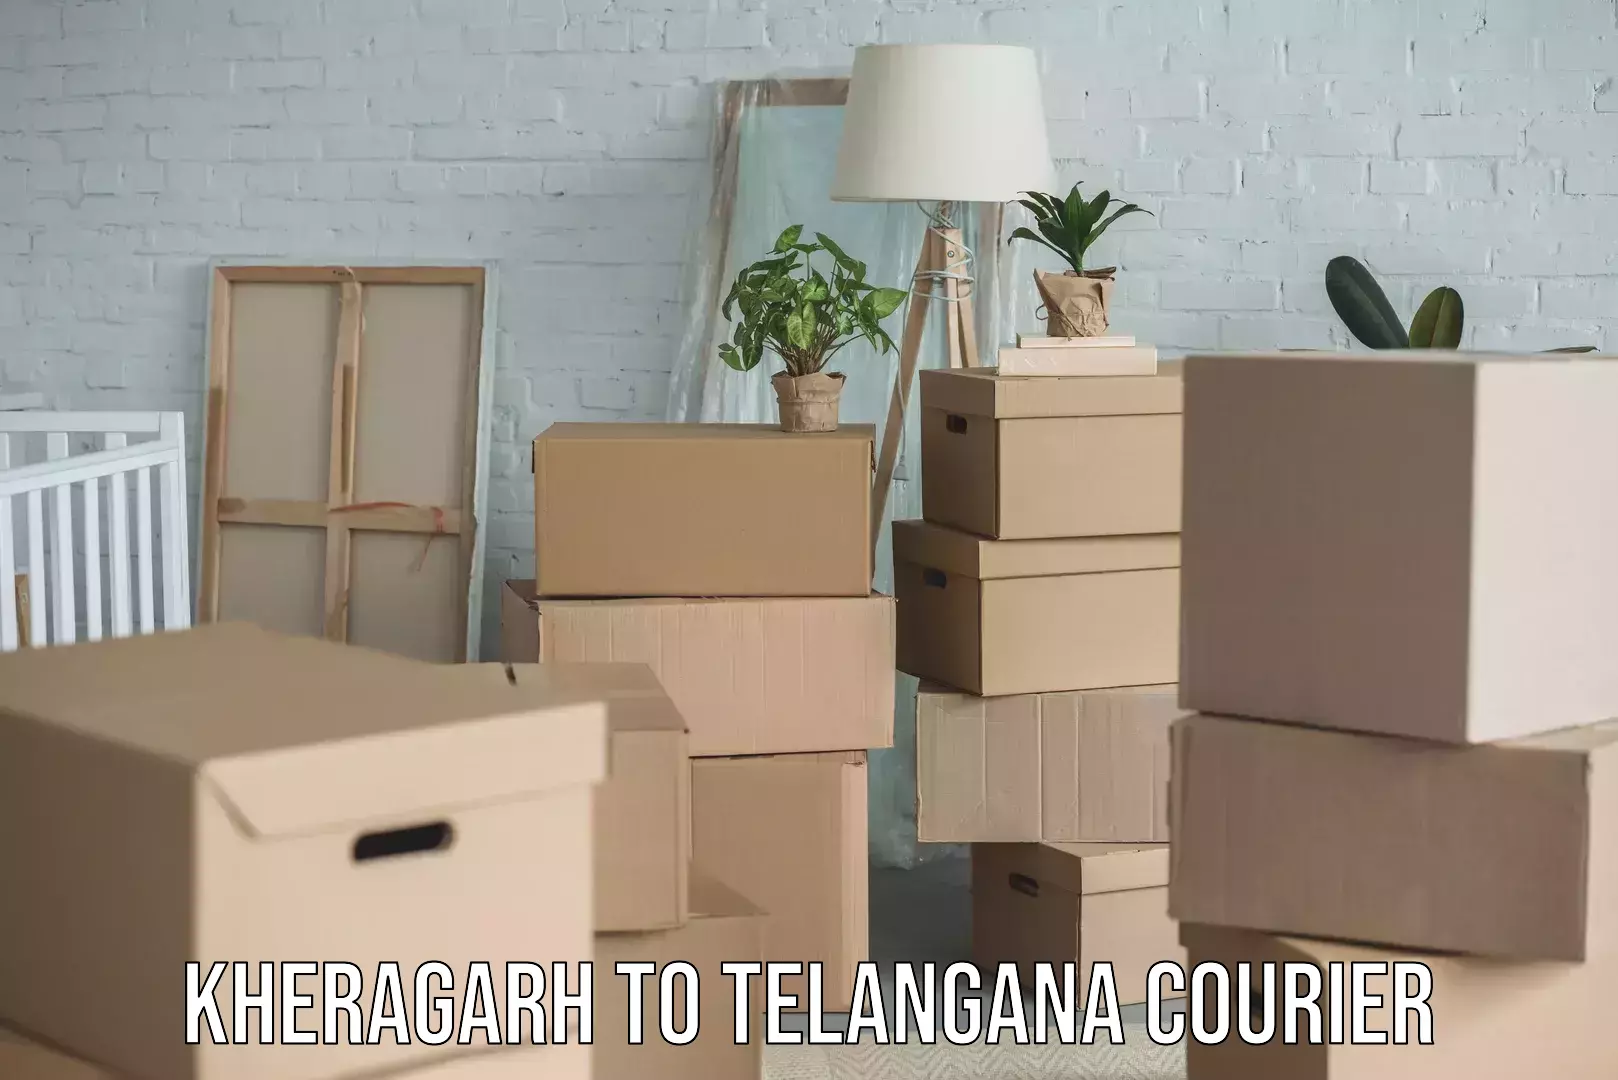 Quality moving and storage Kheragarh to Telangana